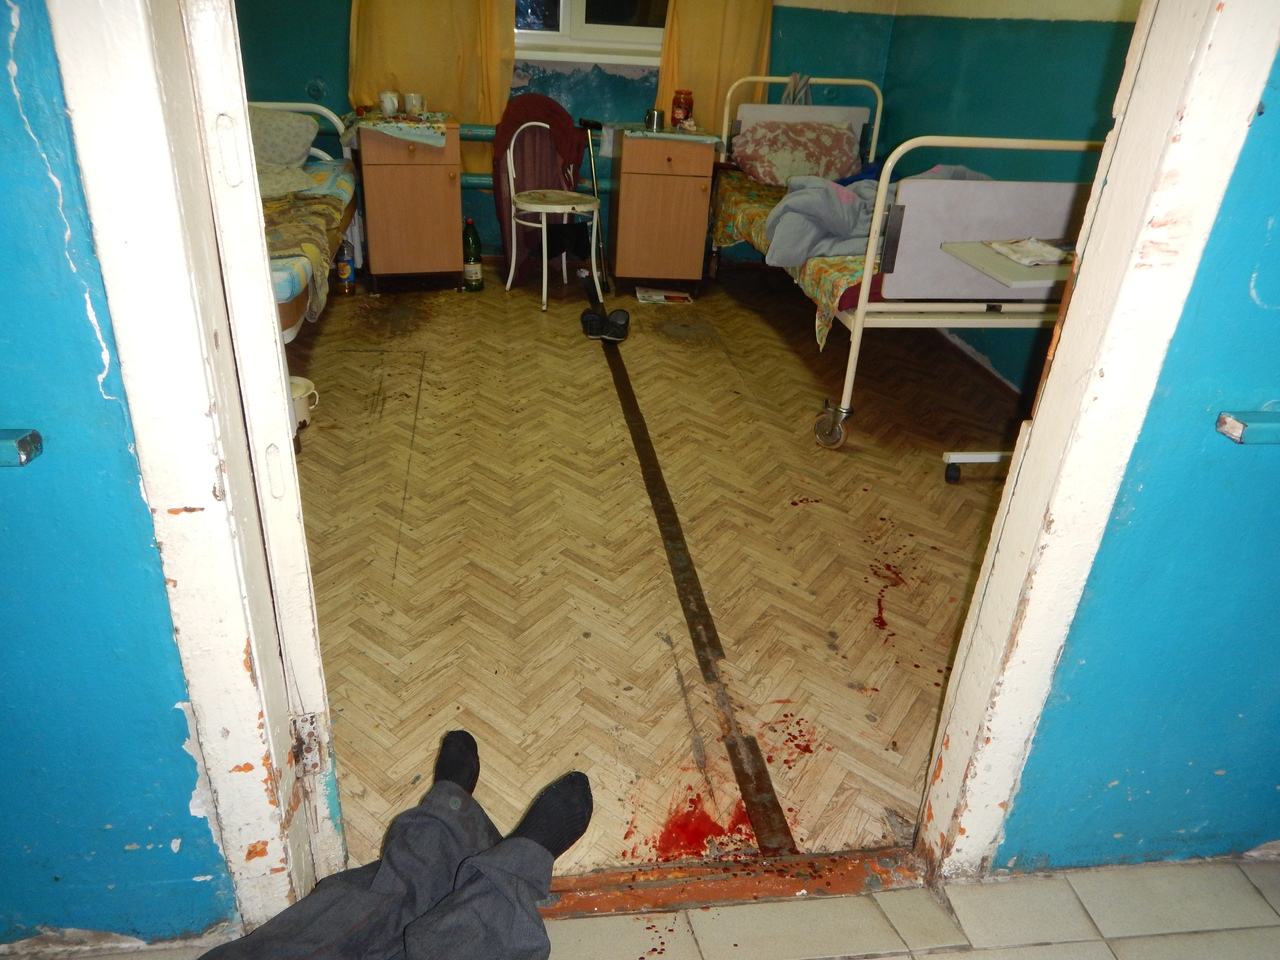 Убийство в доме престарелых: житель Мордовии зарезал своего соседа по комнате